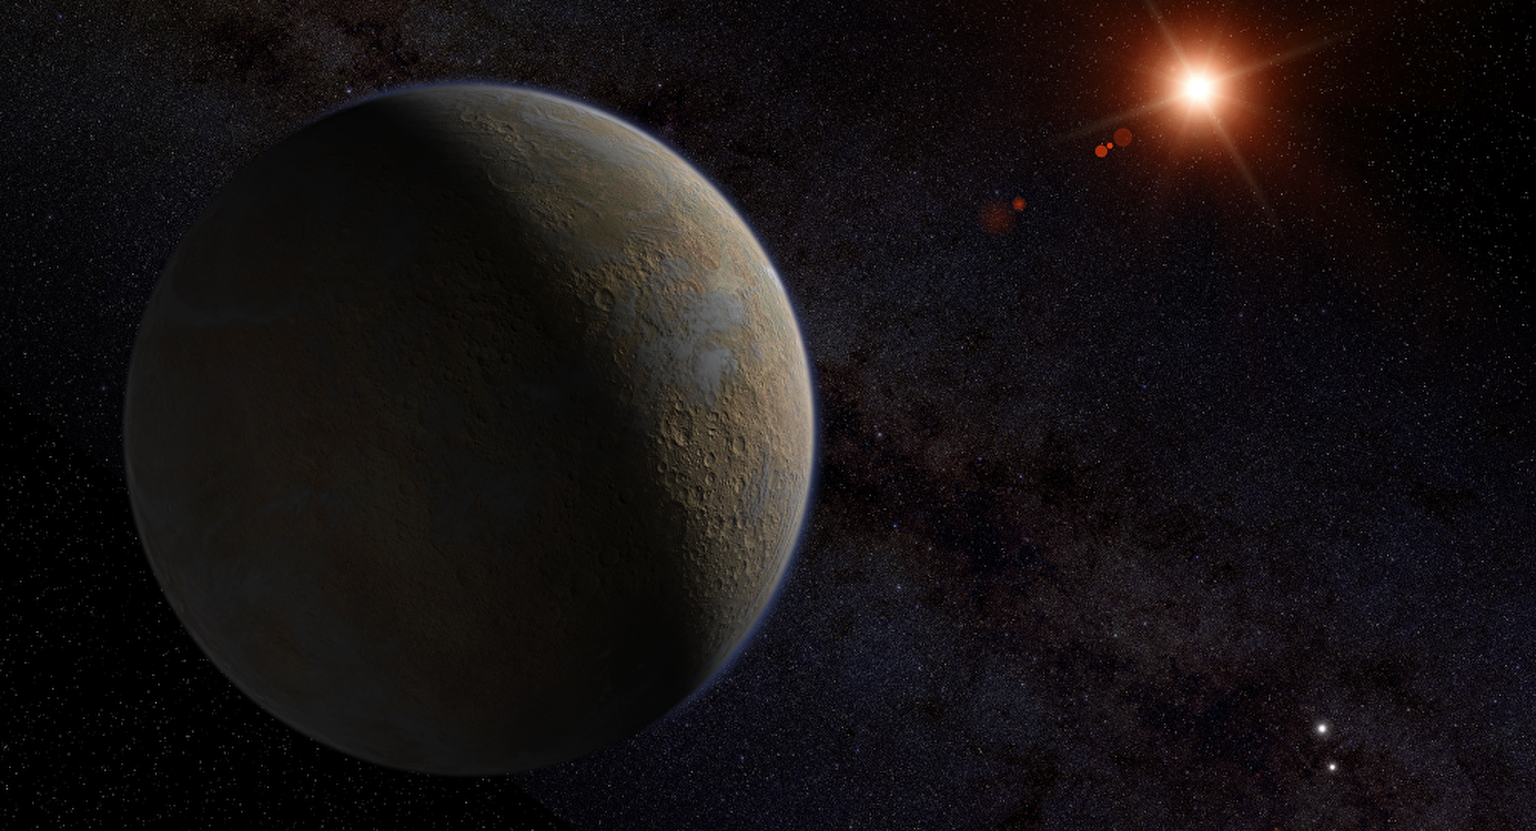 Exoplanet Proxima Centauri b